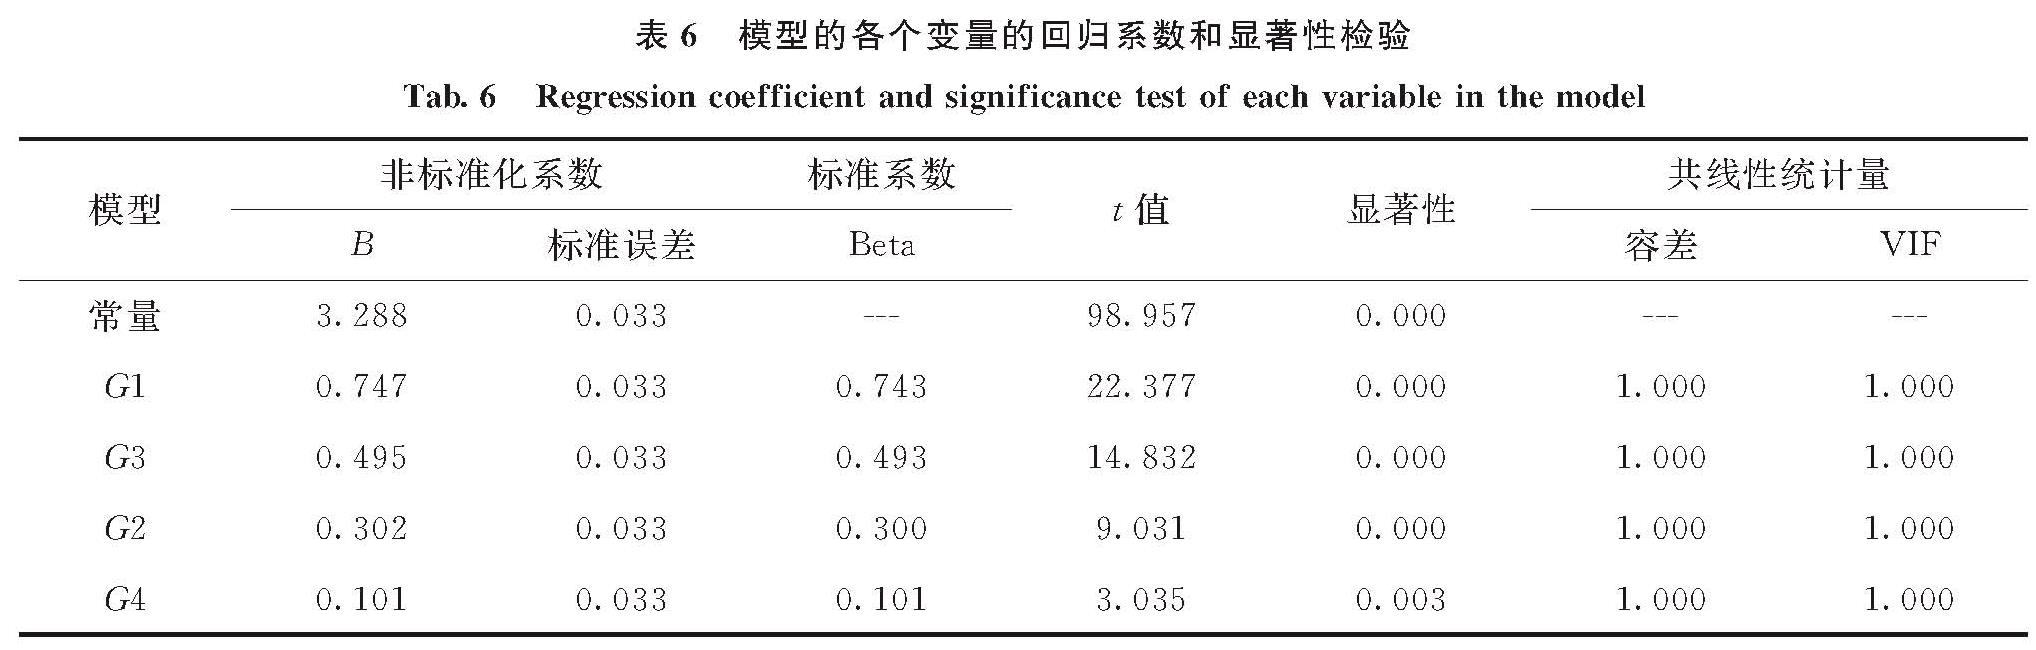 表6 模型的各个变量的回归系数和显著性检验<br/>Tab.6 Regression coefficient and significance test of each variable in the model